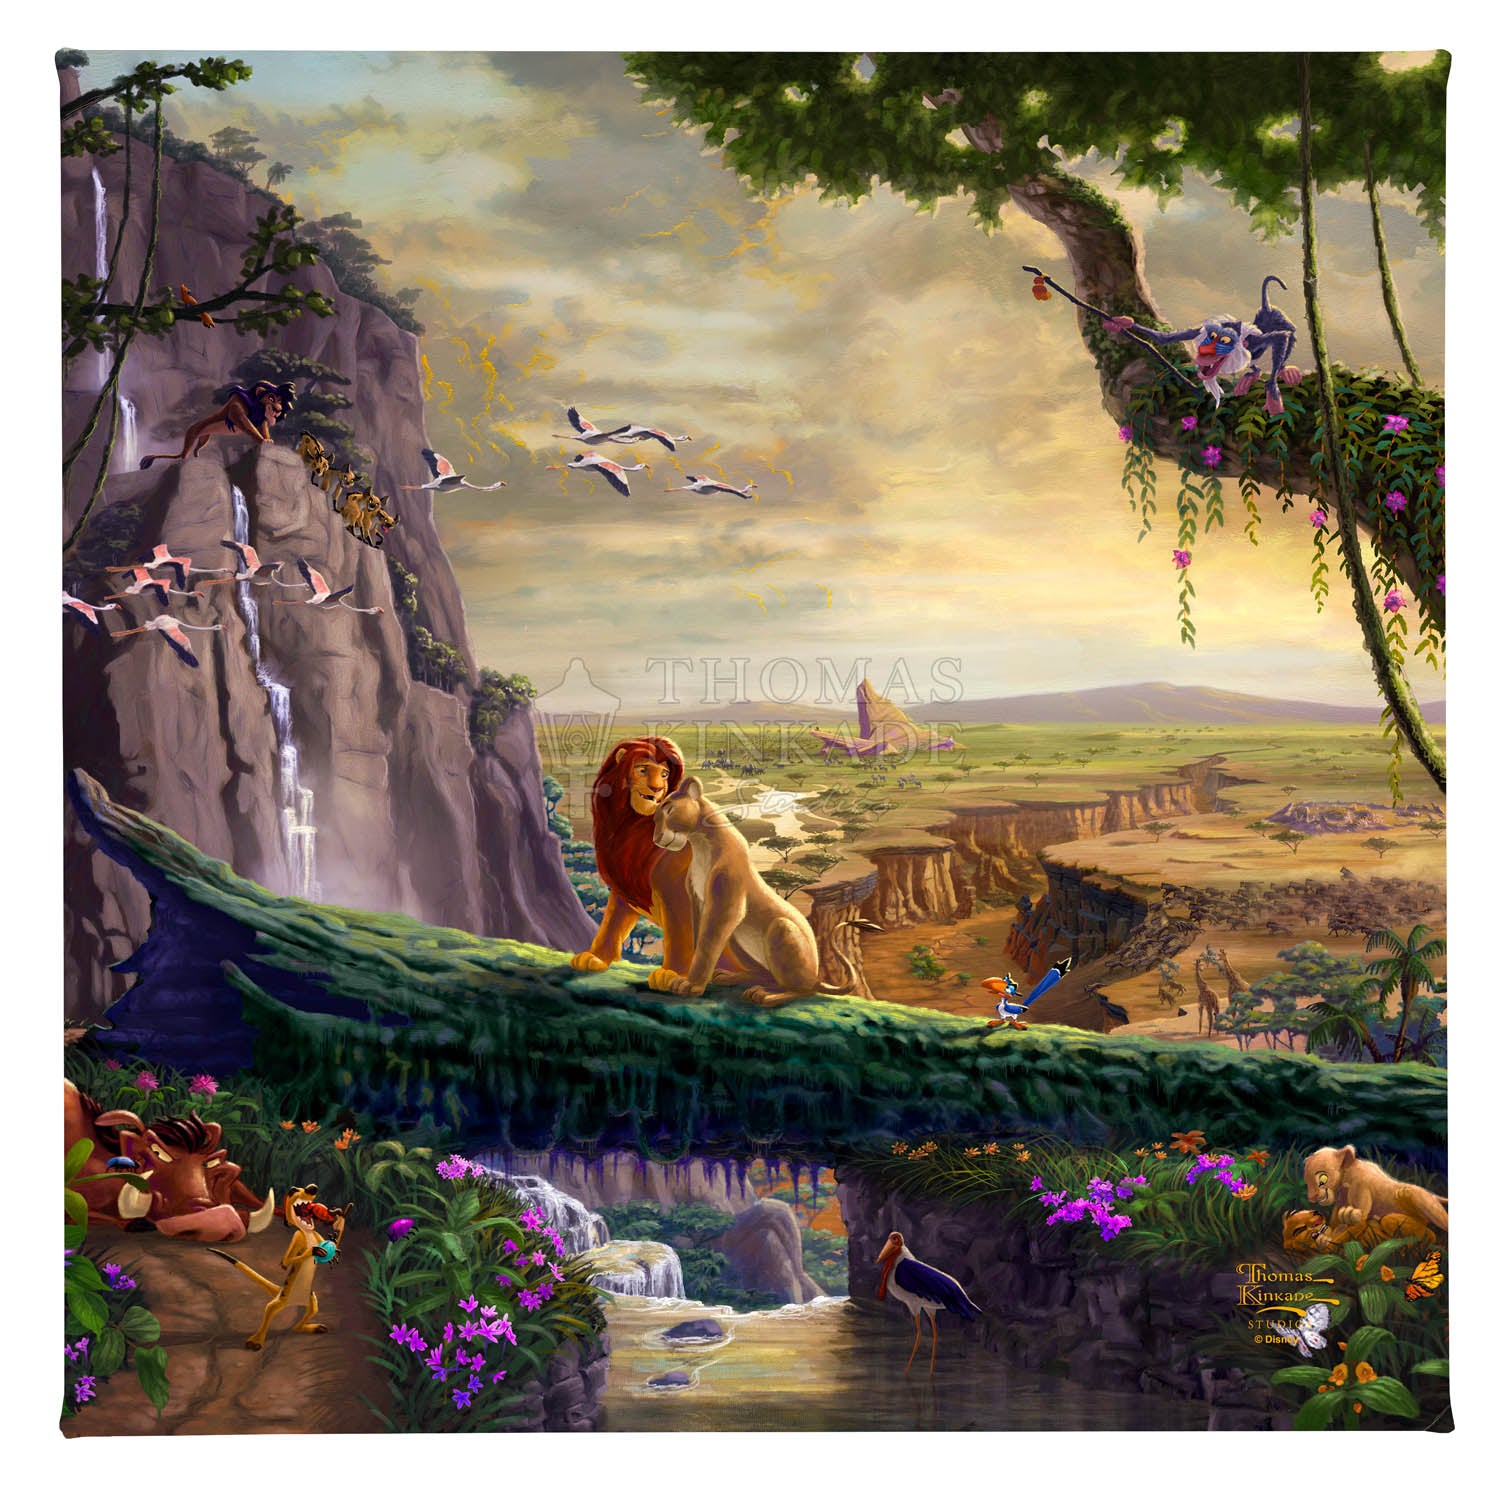 The Lion King Return To Pride Rock Disney Gallery Wraps By Thomas Kinkade  Studios – Disney Art On Main Street